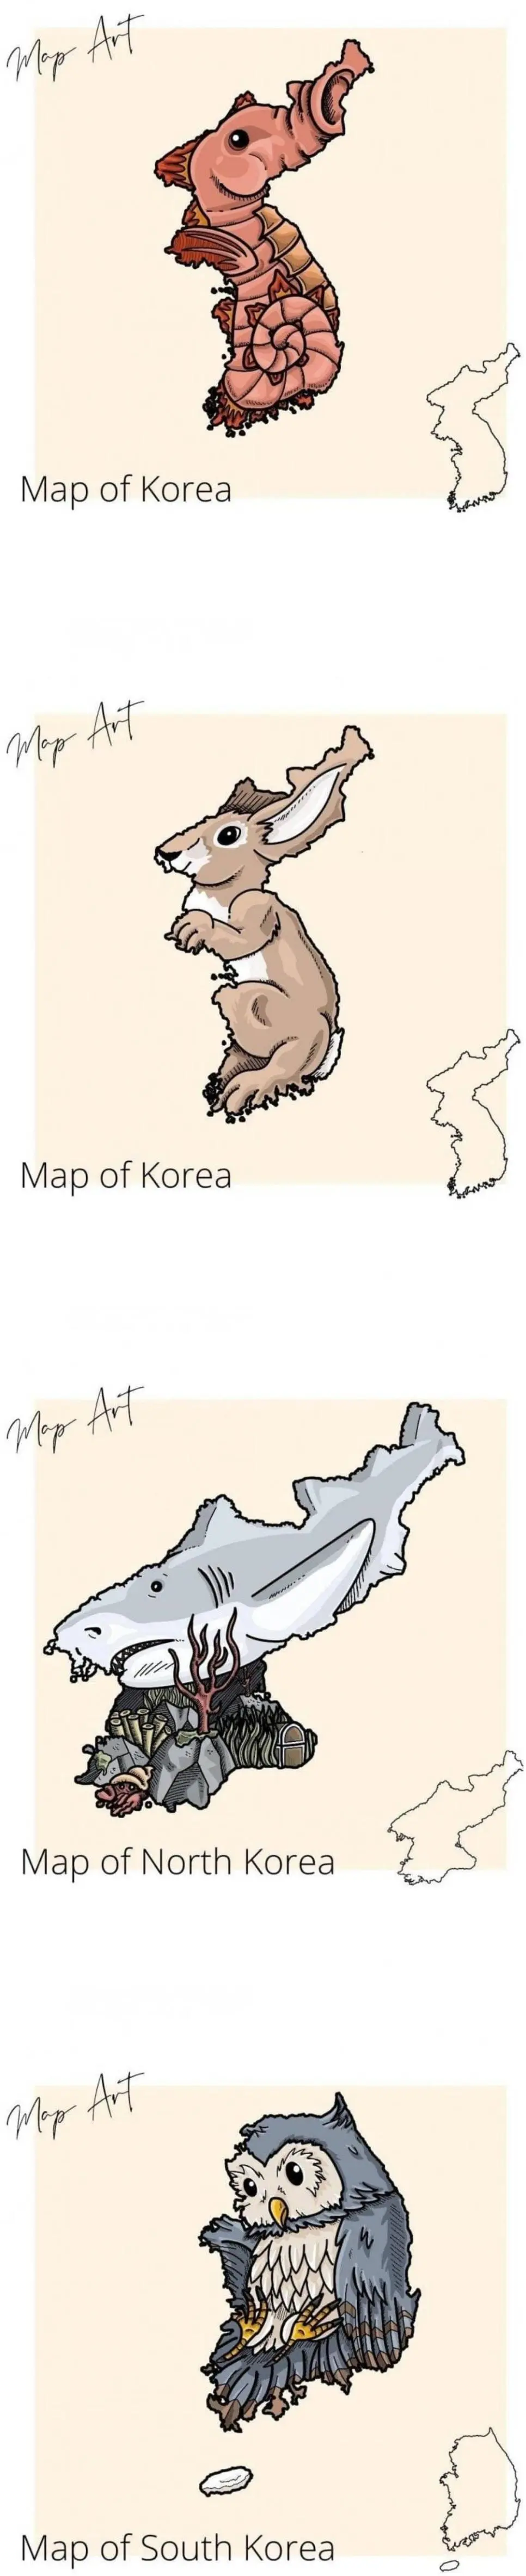 외국에서 본 한국의 국토 모양